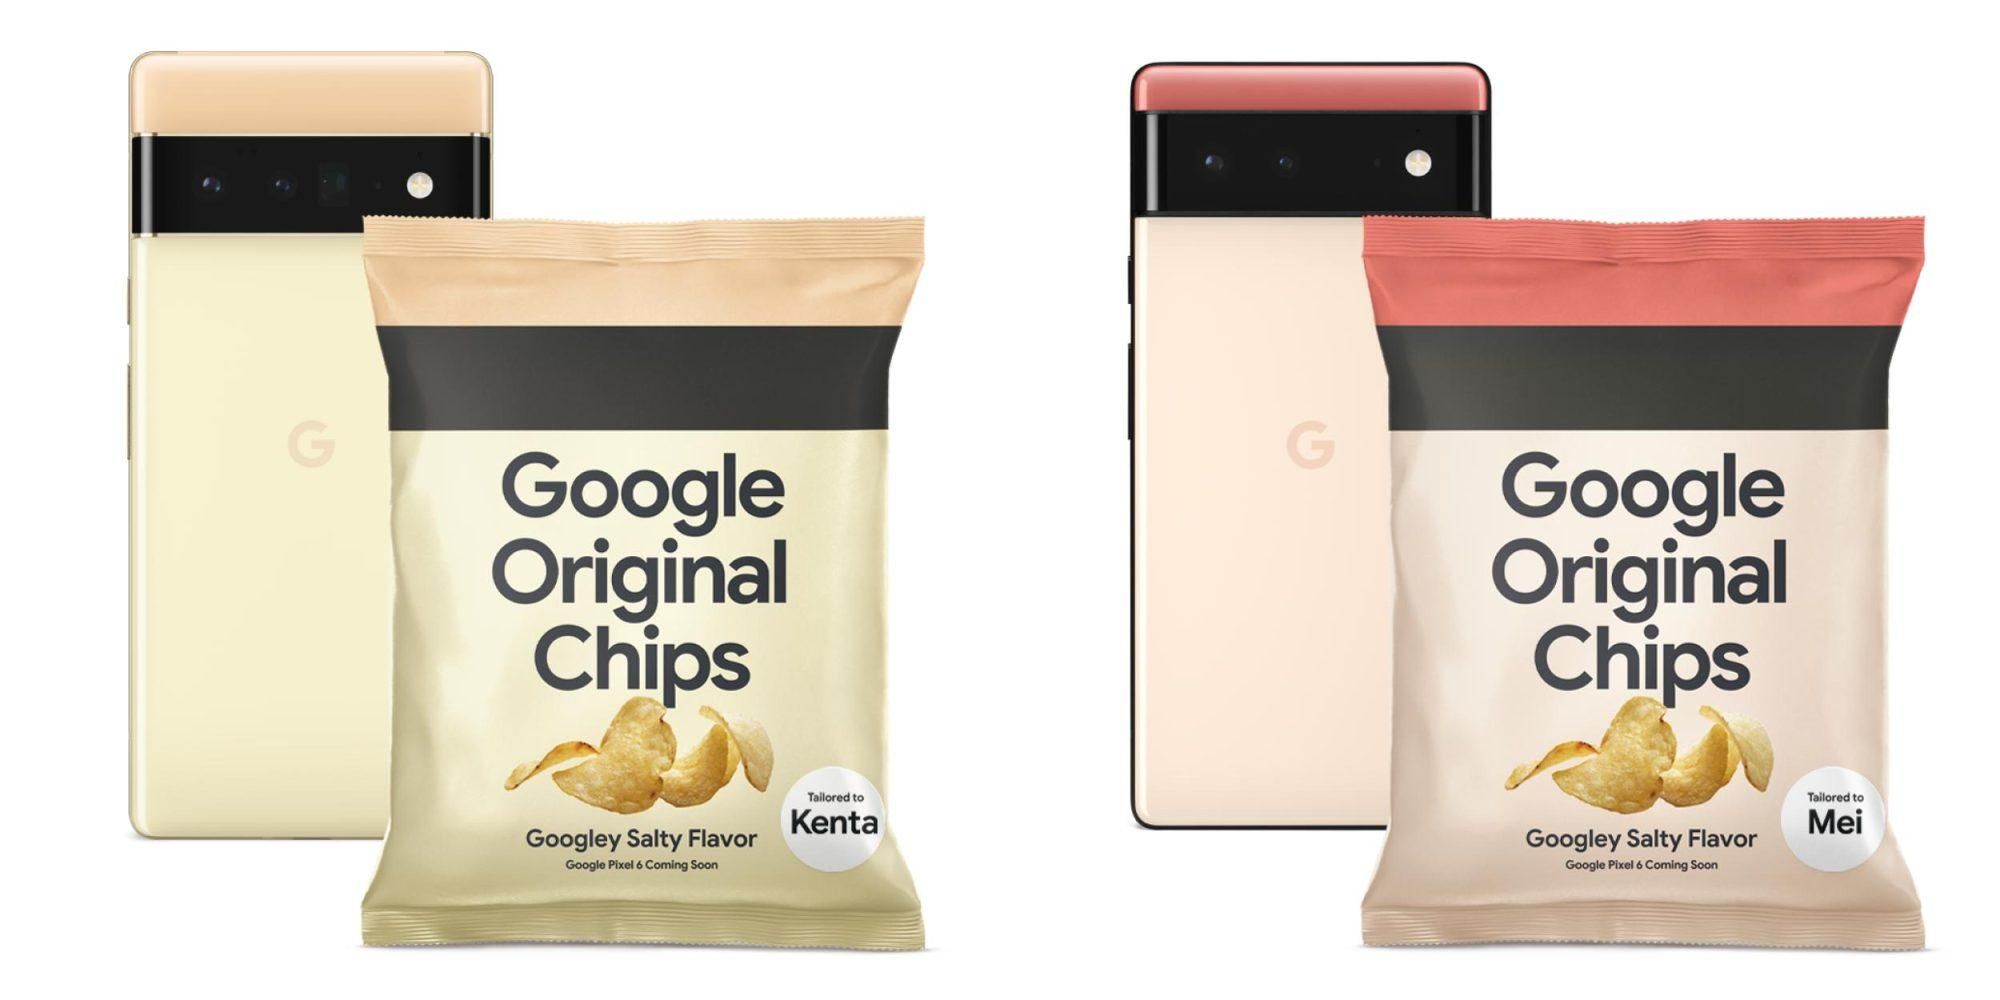 Смачна реклама з секретом: Google випустила чіпси у дизайні смартфонів Pixel 6 - новини мобільних телефонів - Техно